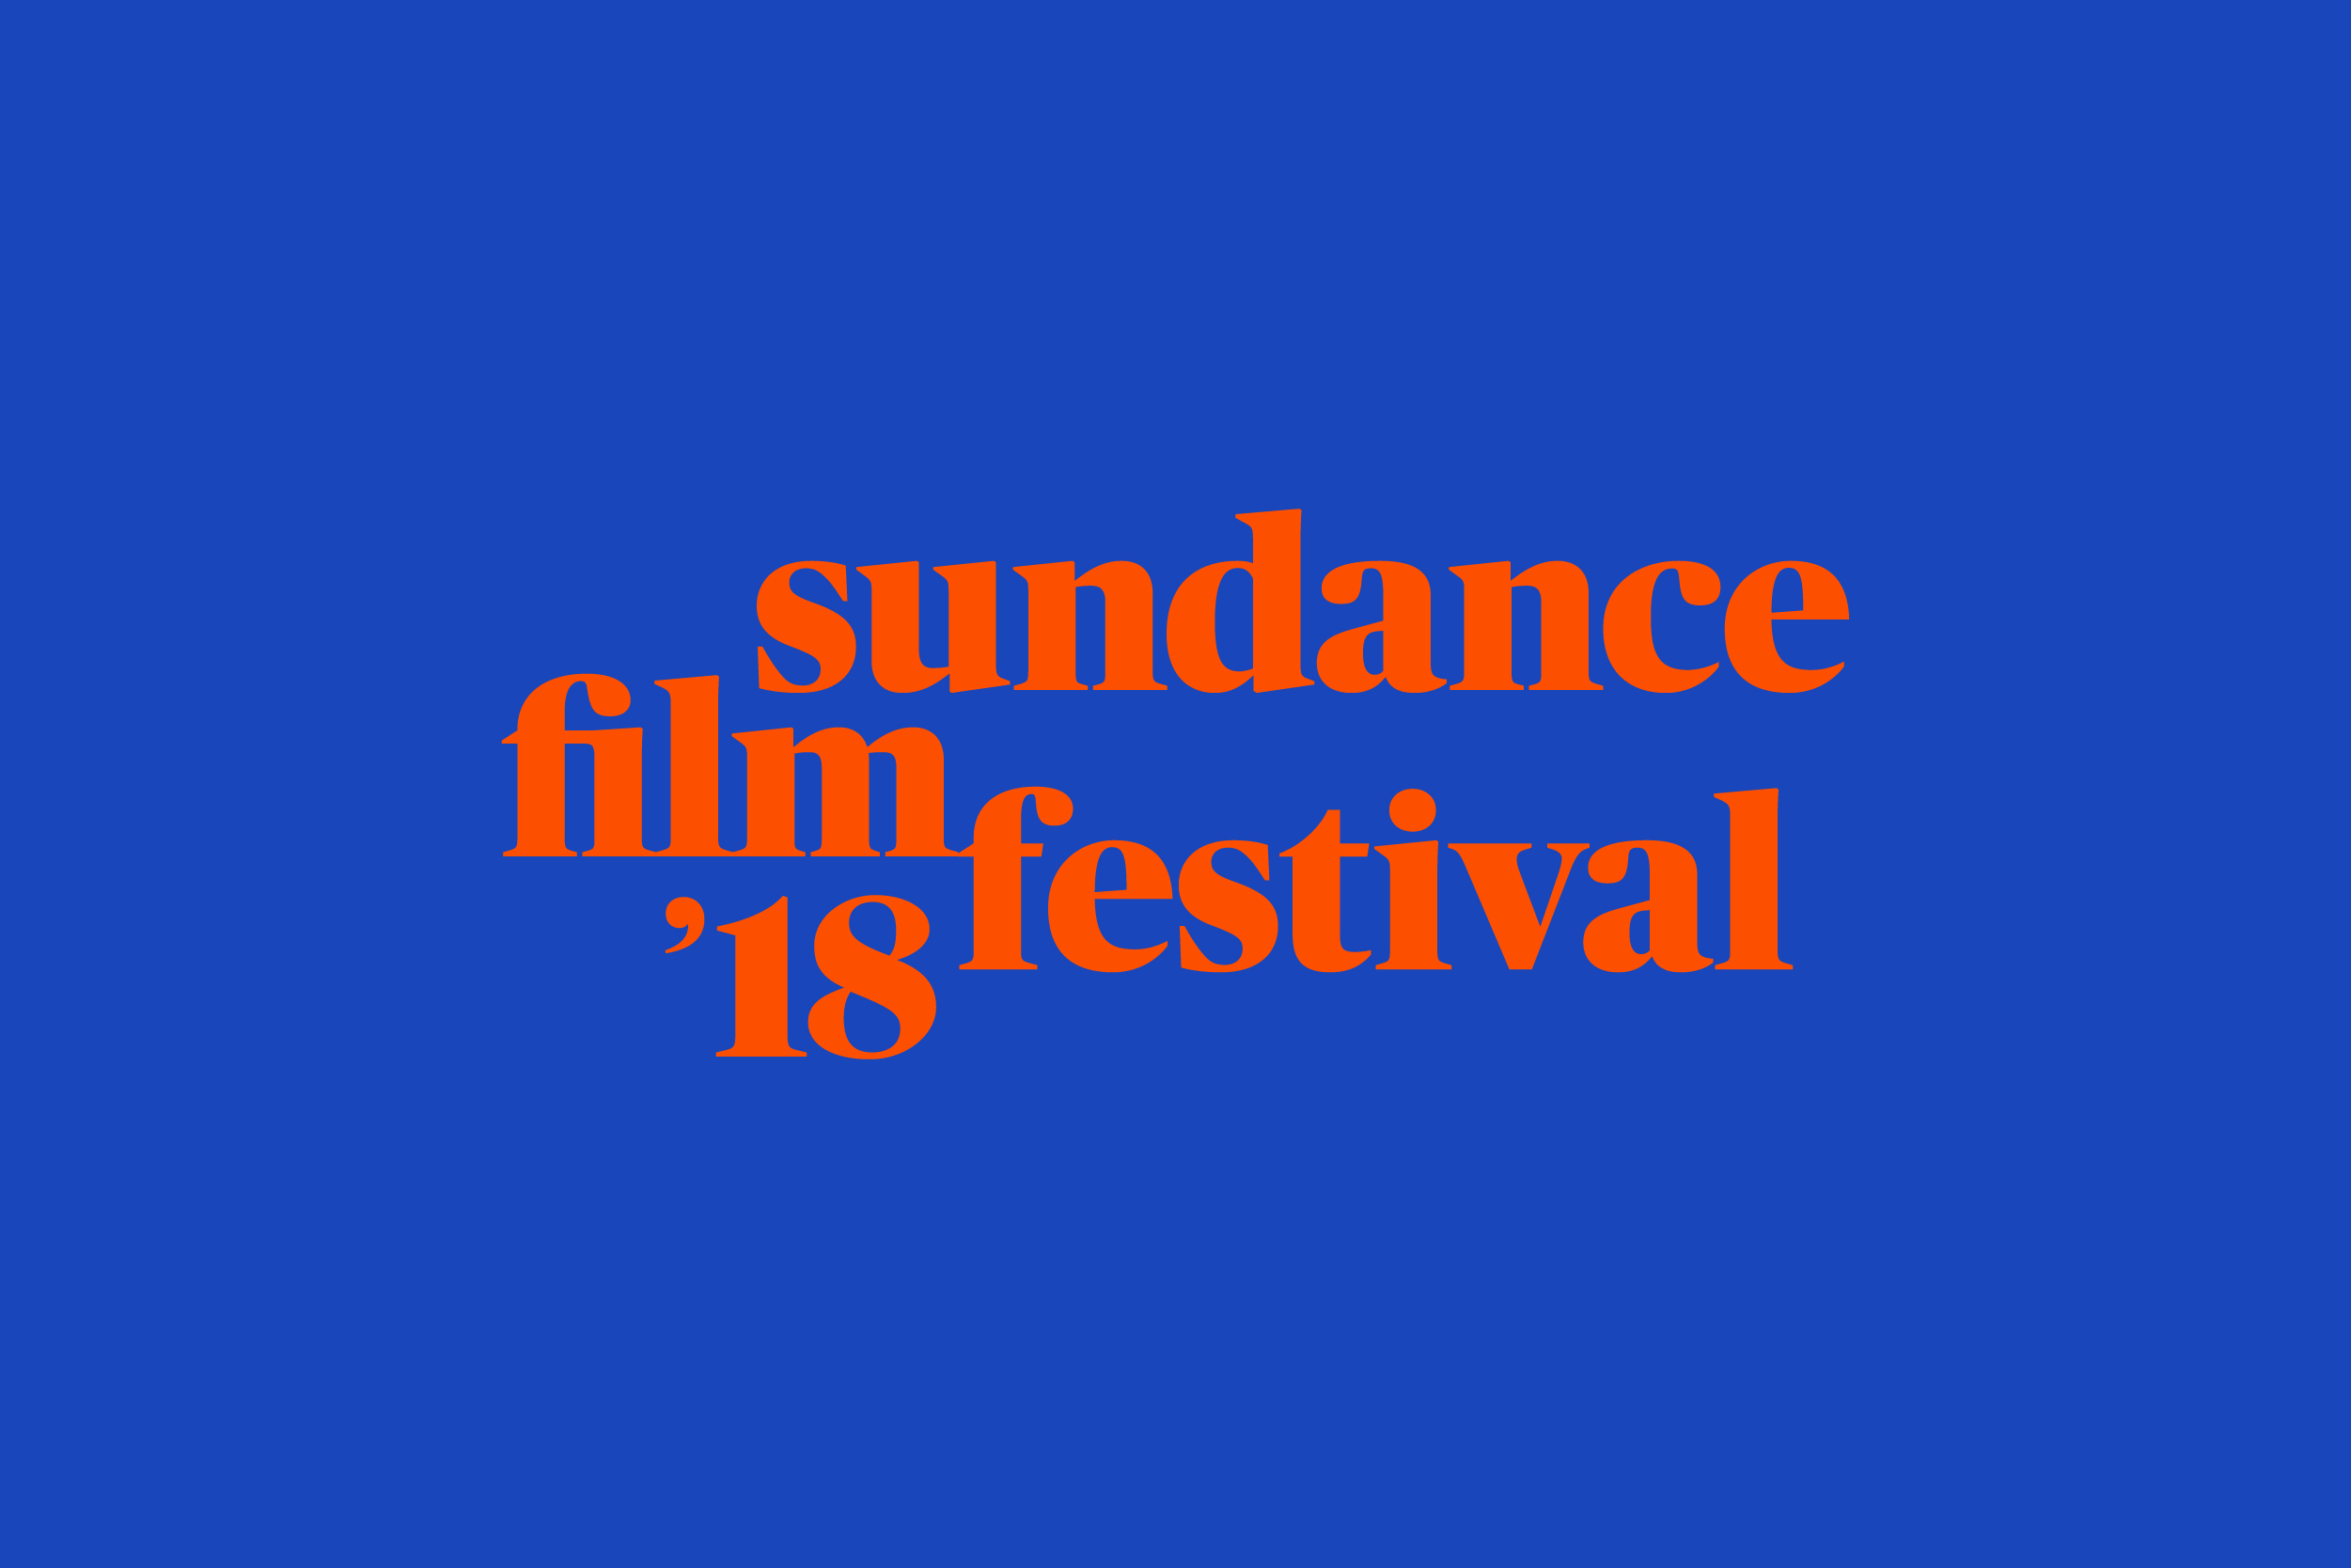 Sundance Film Festival 2018 logo